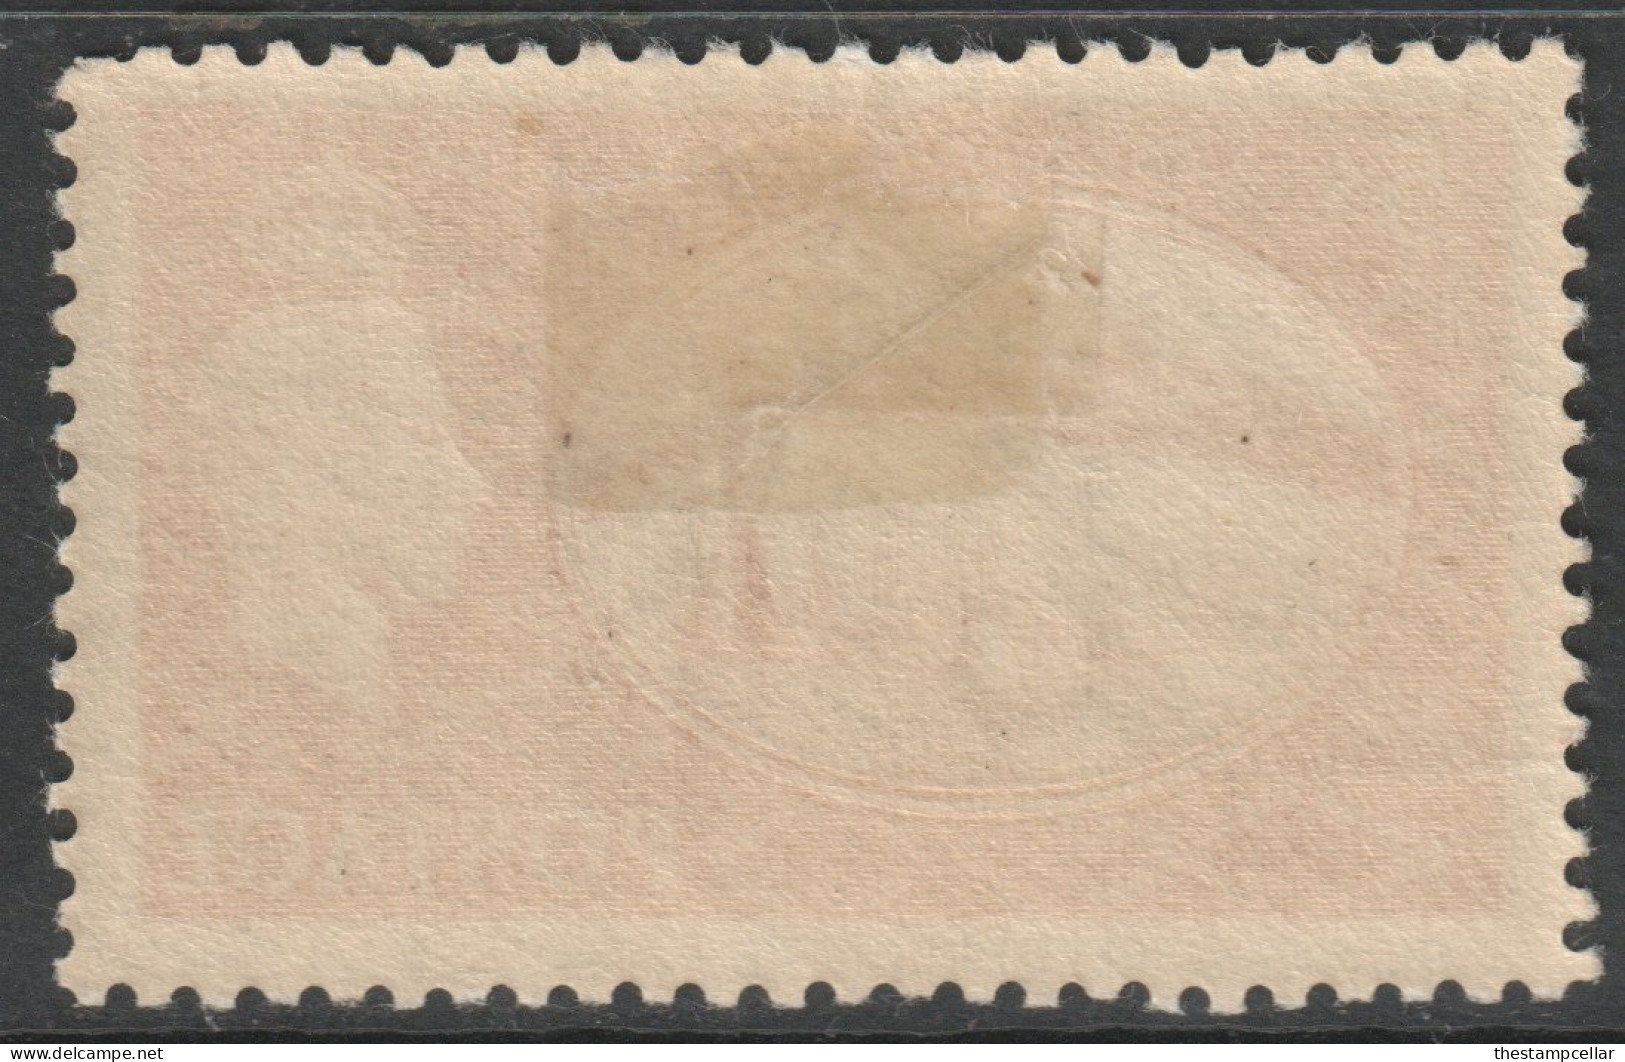 GB Scott 287 - SG510, 1951 Festival 5/- MH* - Unused Stamps